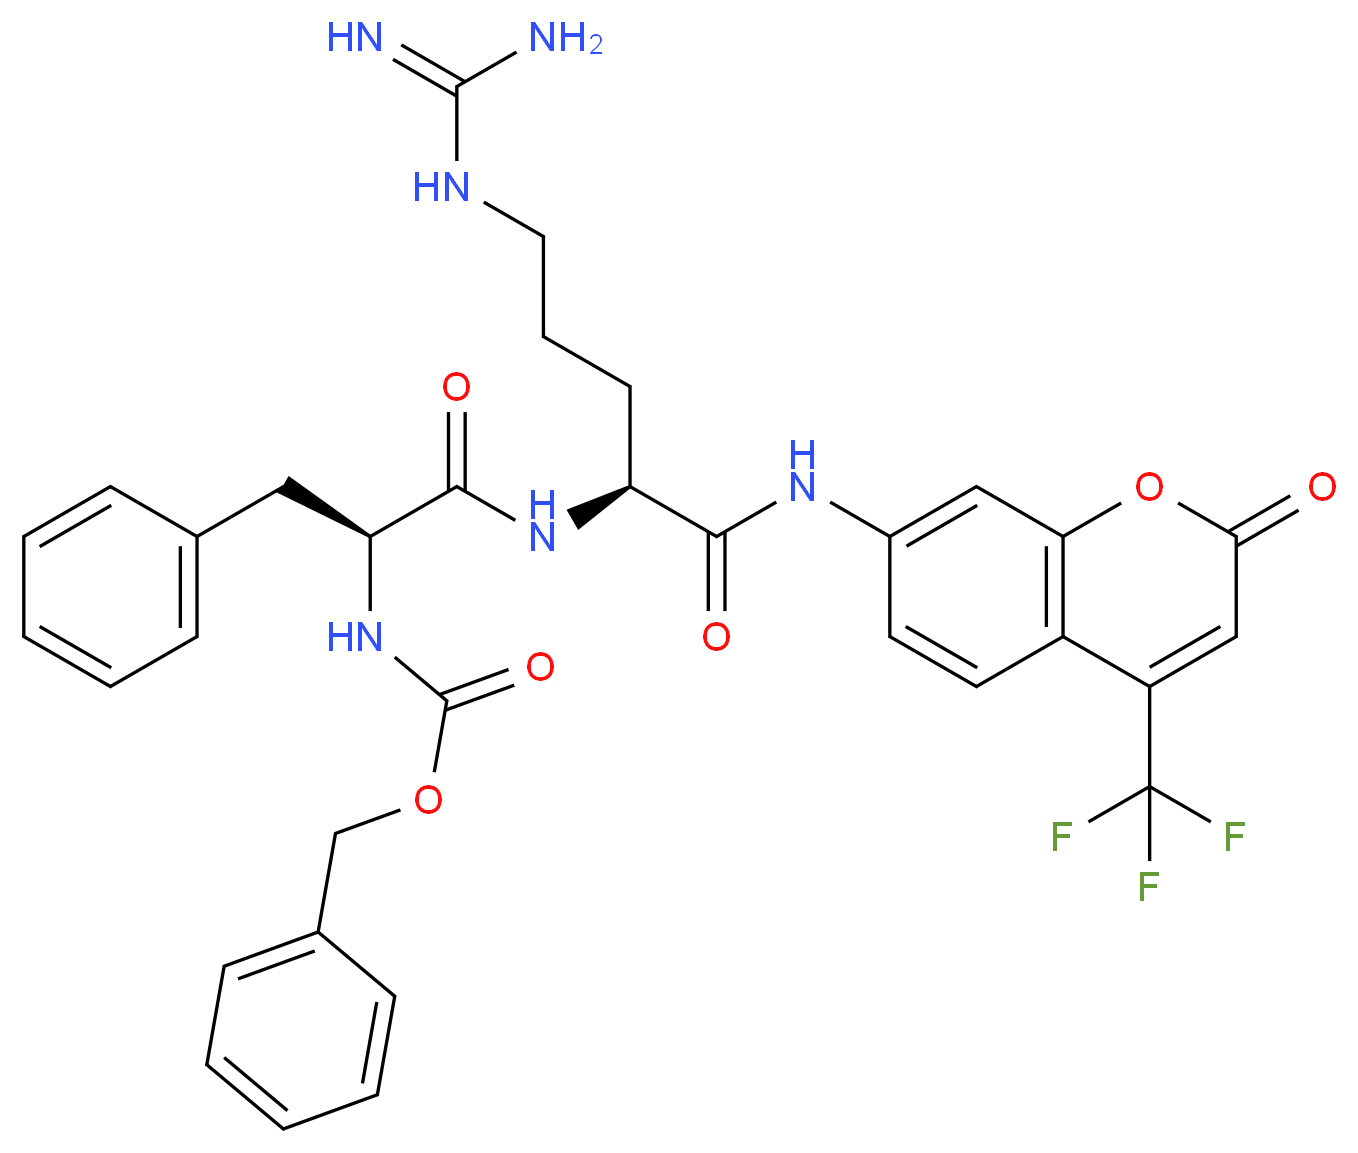 Z-Phe-Arg-7-Amino-4-trifluoromethylcoumarin_Molecular_structure_CAS_65147-22-0)